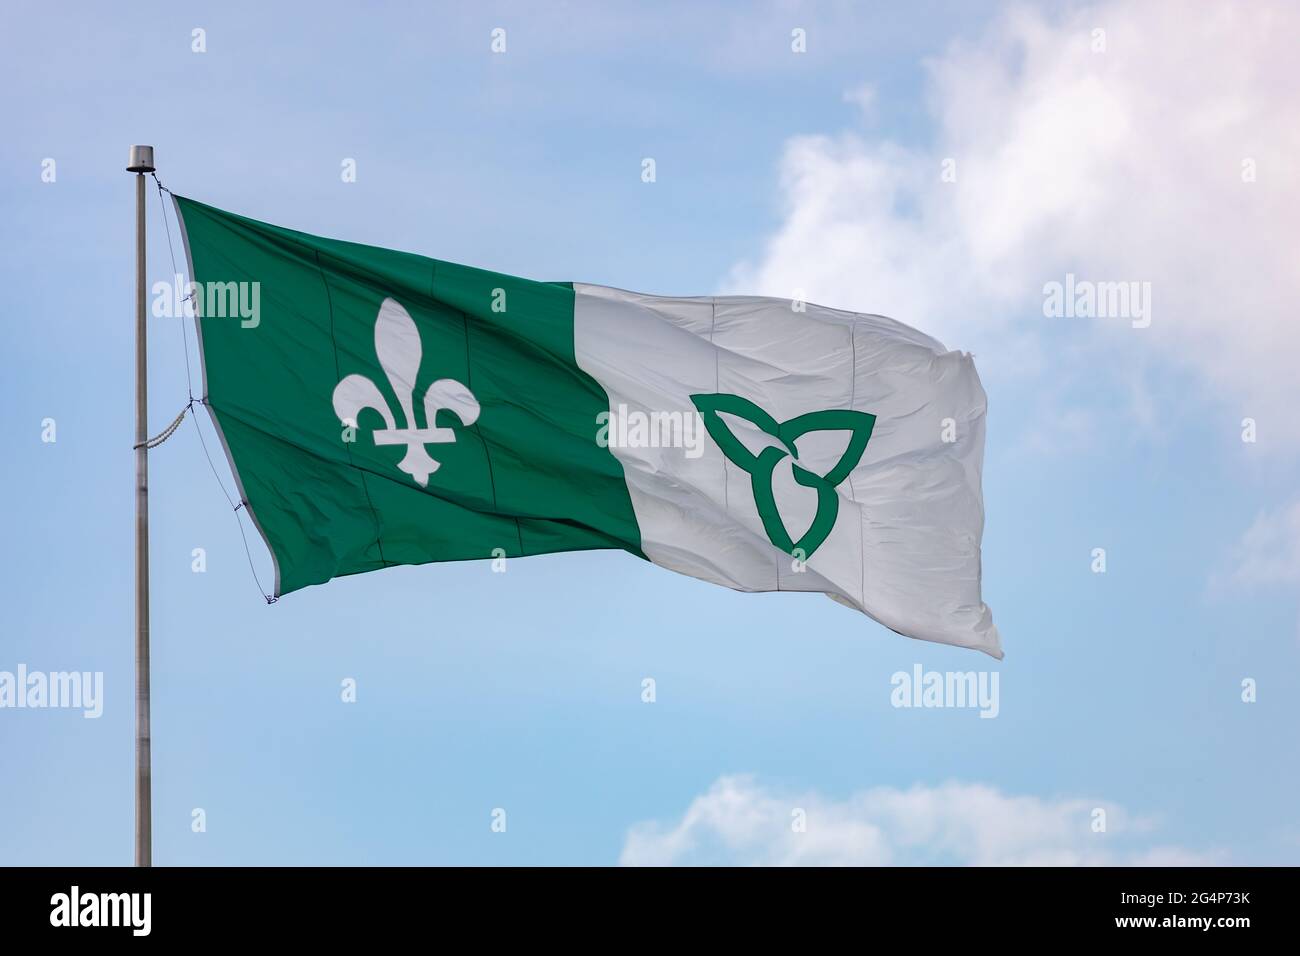 Hawkesbury, Ontario, Kanada - 21. Juni 2021: Die französisch-ontarische Flagge, die französisches kanadisches Erbe in Teilen von Ontario repräsentiert, fliegt auf einem Fahnenmast Stockfoto